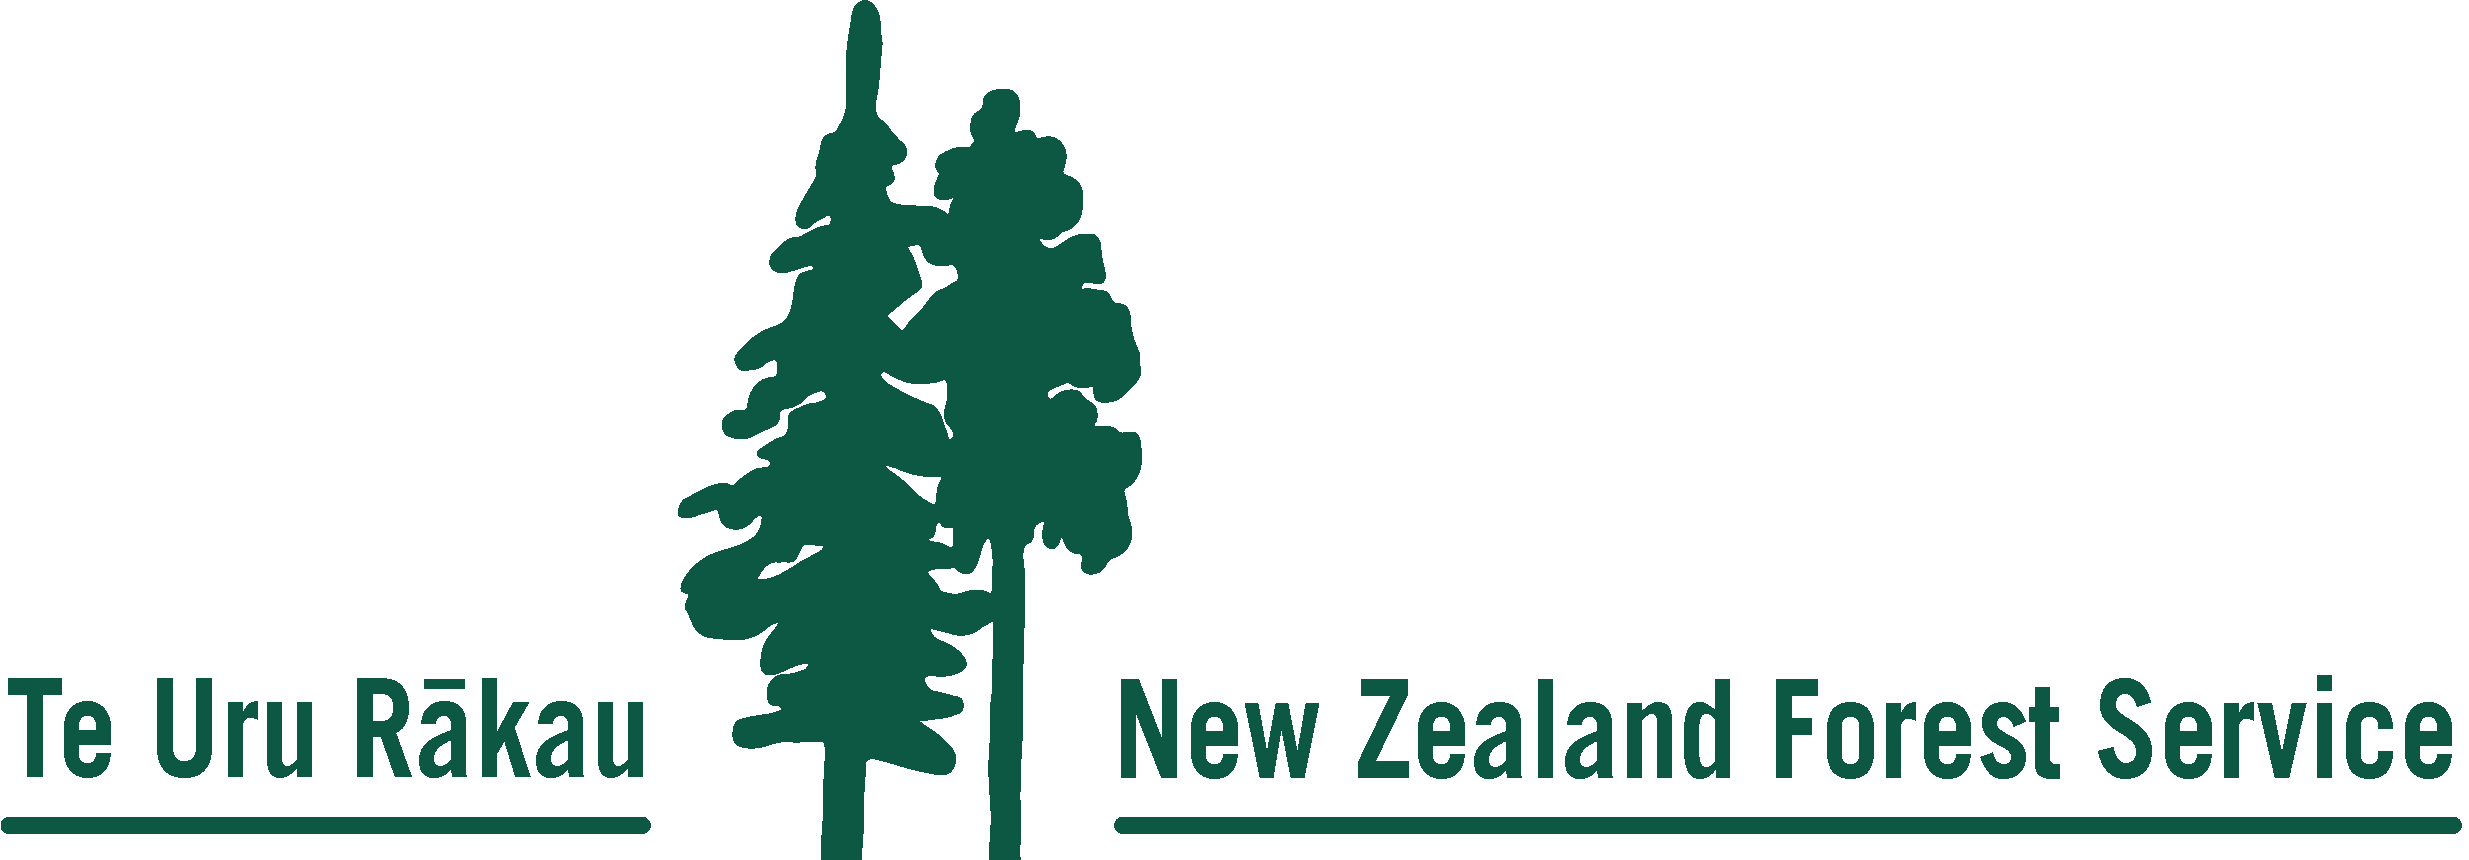 Te Uru Rākau - New Zealand Forestry Service logo